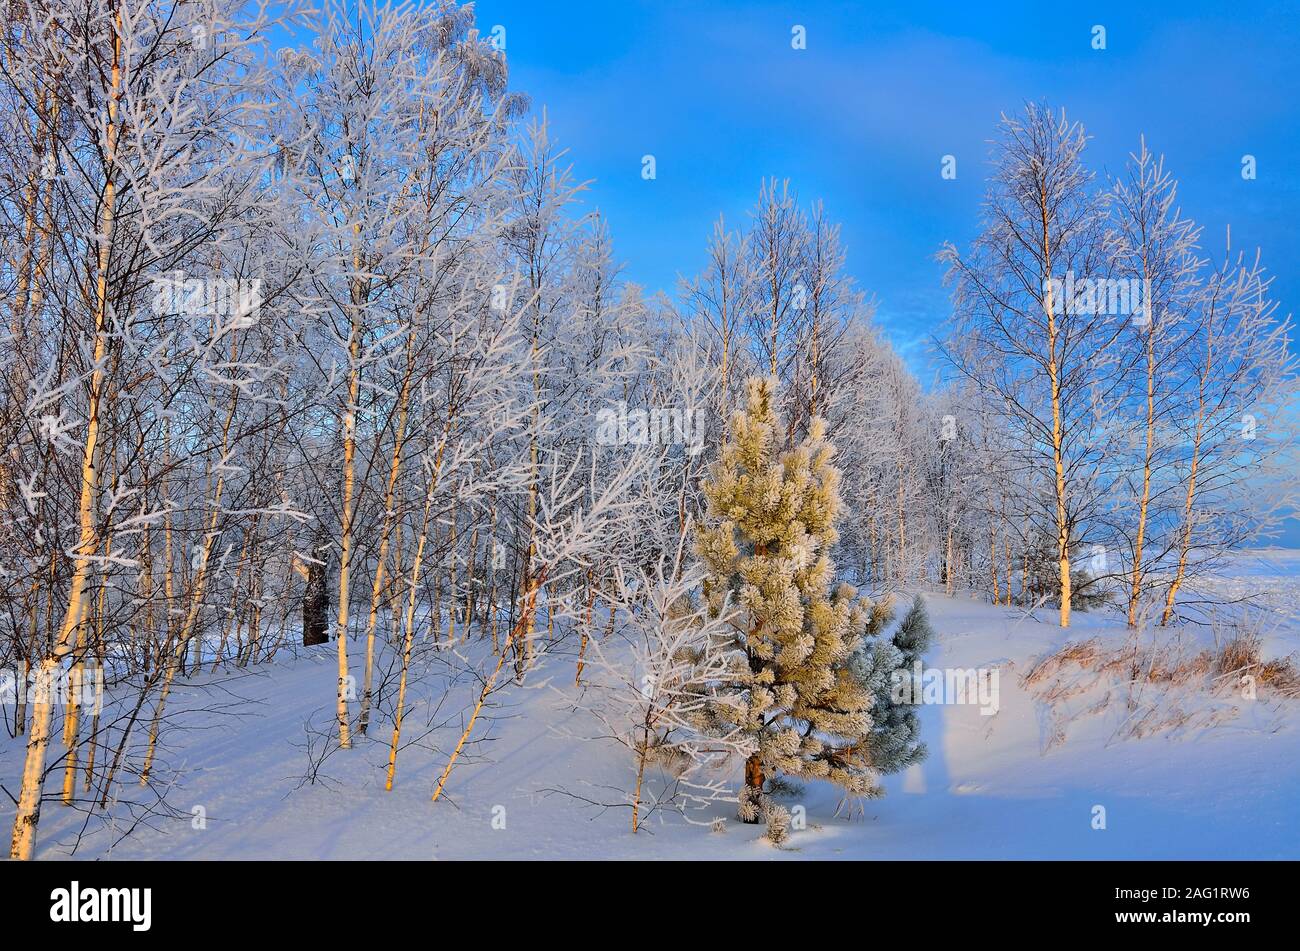 Incantevole paesaggio invernale con verde giovane albero di pino nel bosco di betulle, con neve e brina coperto. Luce dorata del sole di setting e le ombre blu su Foto Stock